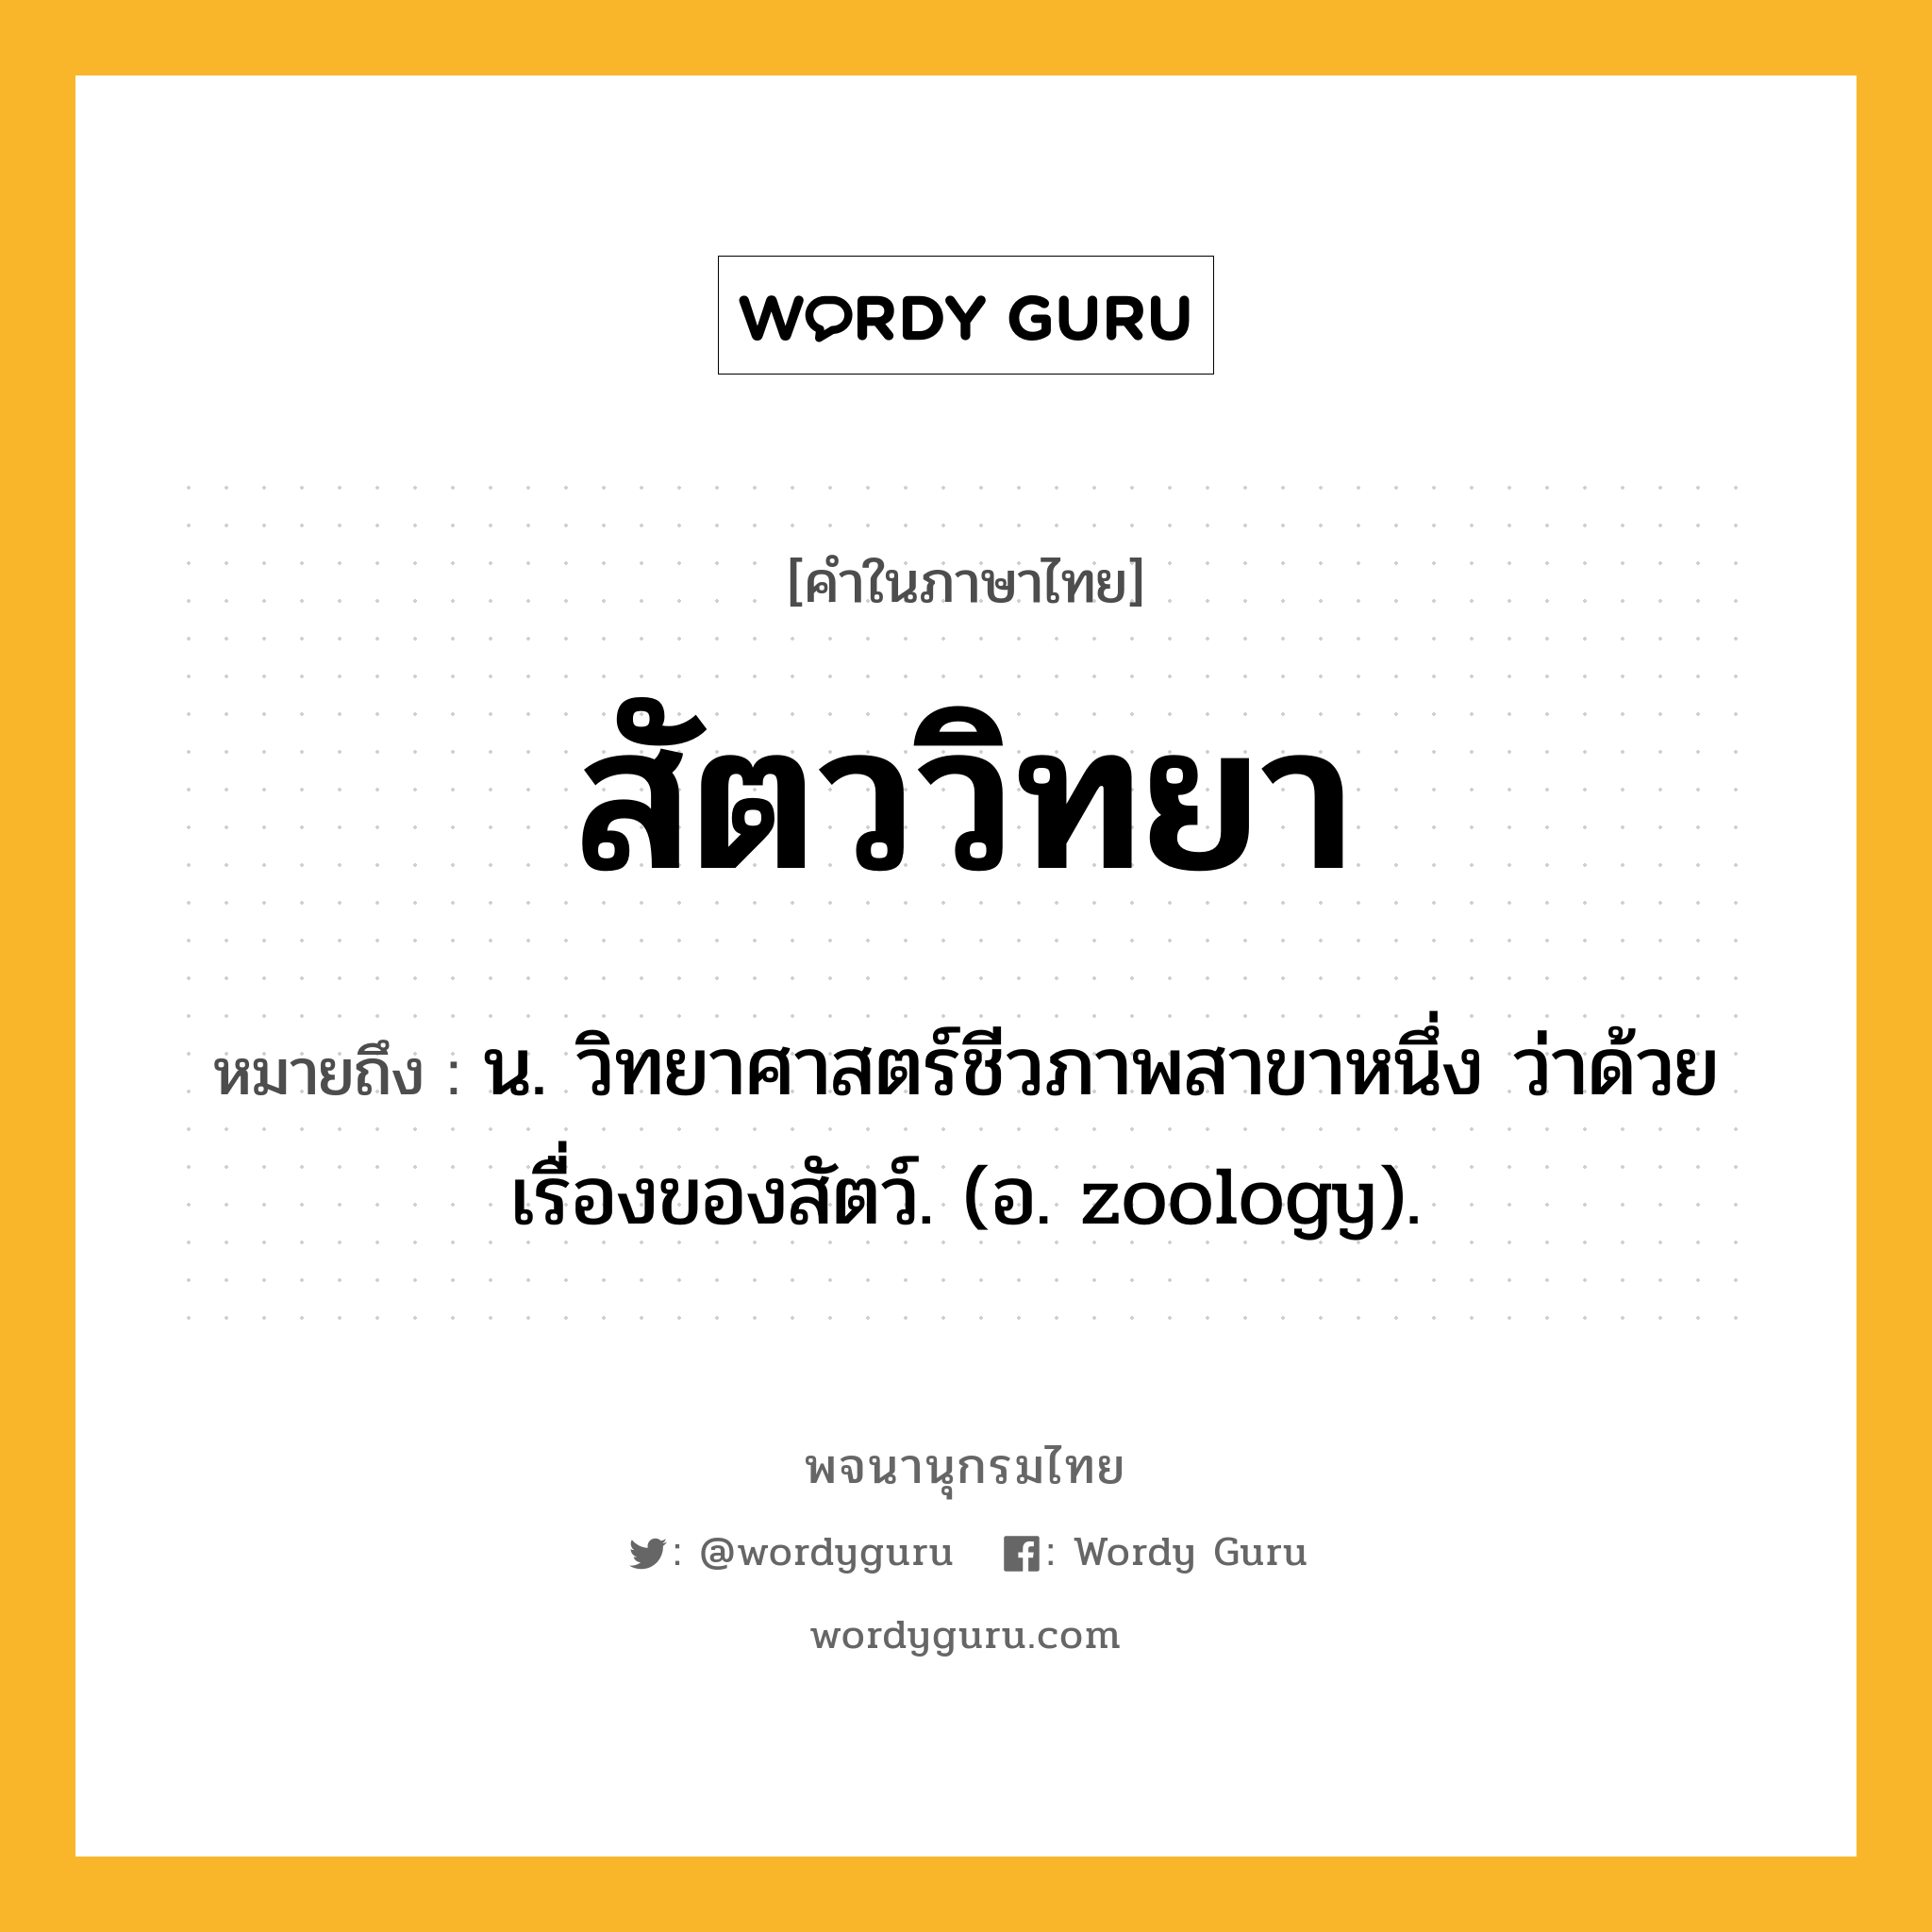 สัตววิทยา หมายถึงอะไร?, คำในภาษาไทย สัตววิทยา หมายถึง น. วิทยาศาสตร์ชีวภาพสาขาหนึ่ง ว่าด้วยเรื่องของสัตว์. (อ. zoology).